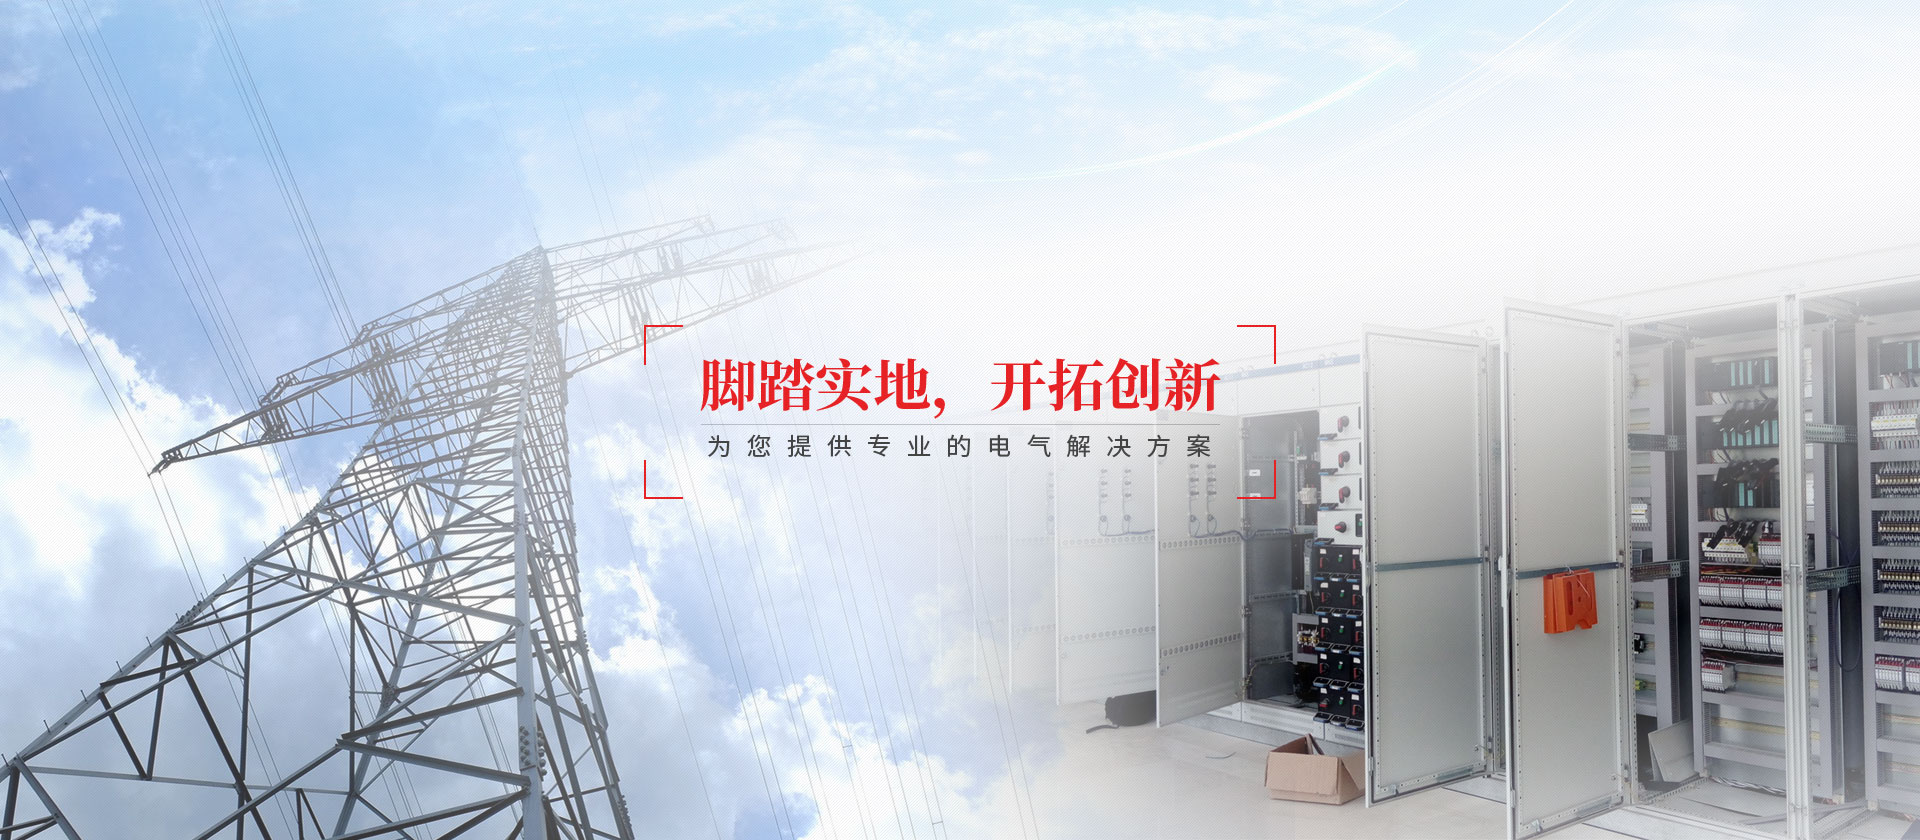 高低壓成套配電柜廠家,廣東粵科電氣有限公司